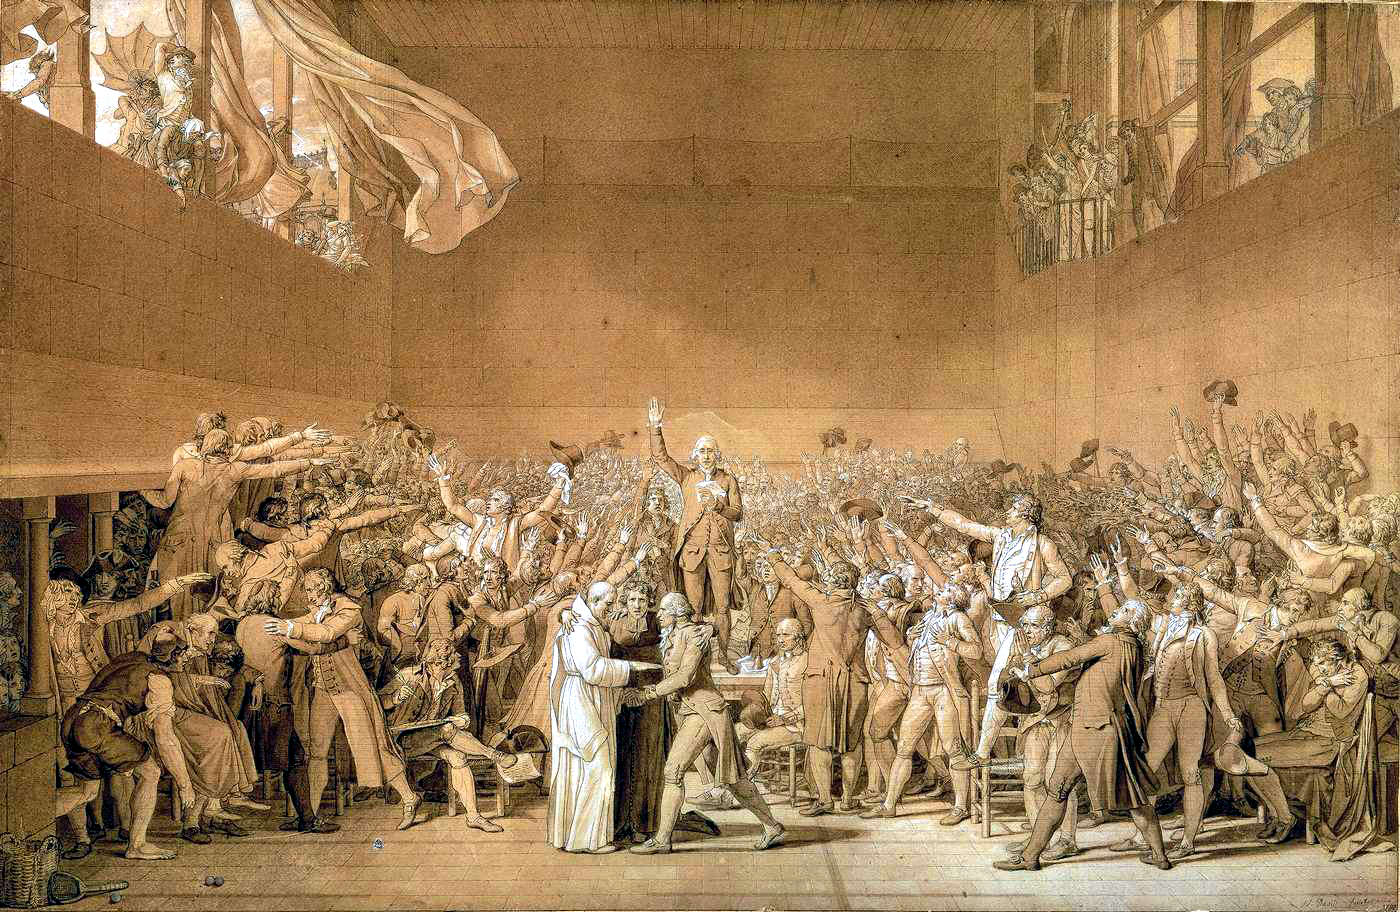 Giuramento della Pallacorda, di Jacques-Louis David